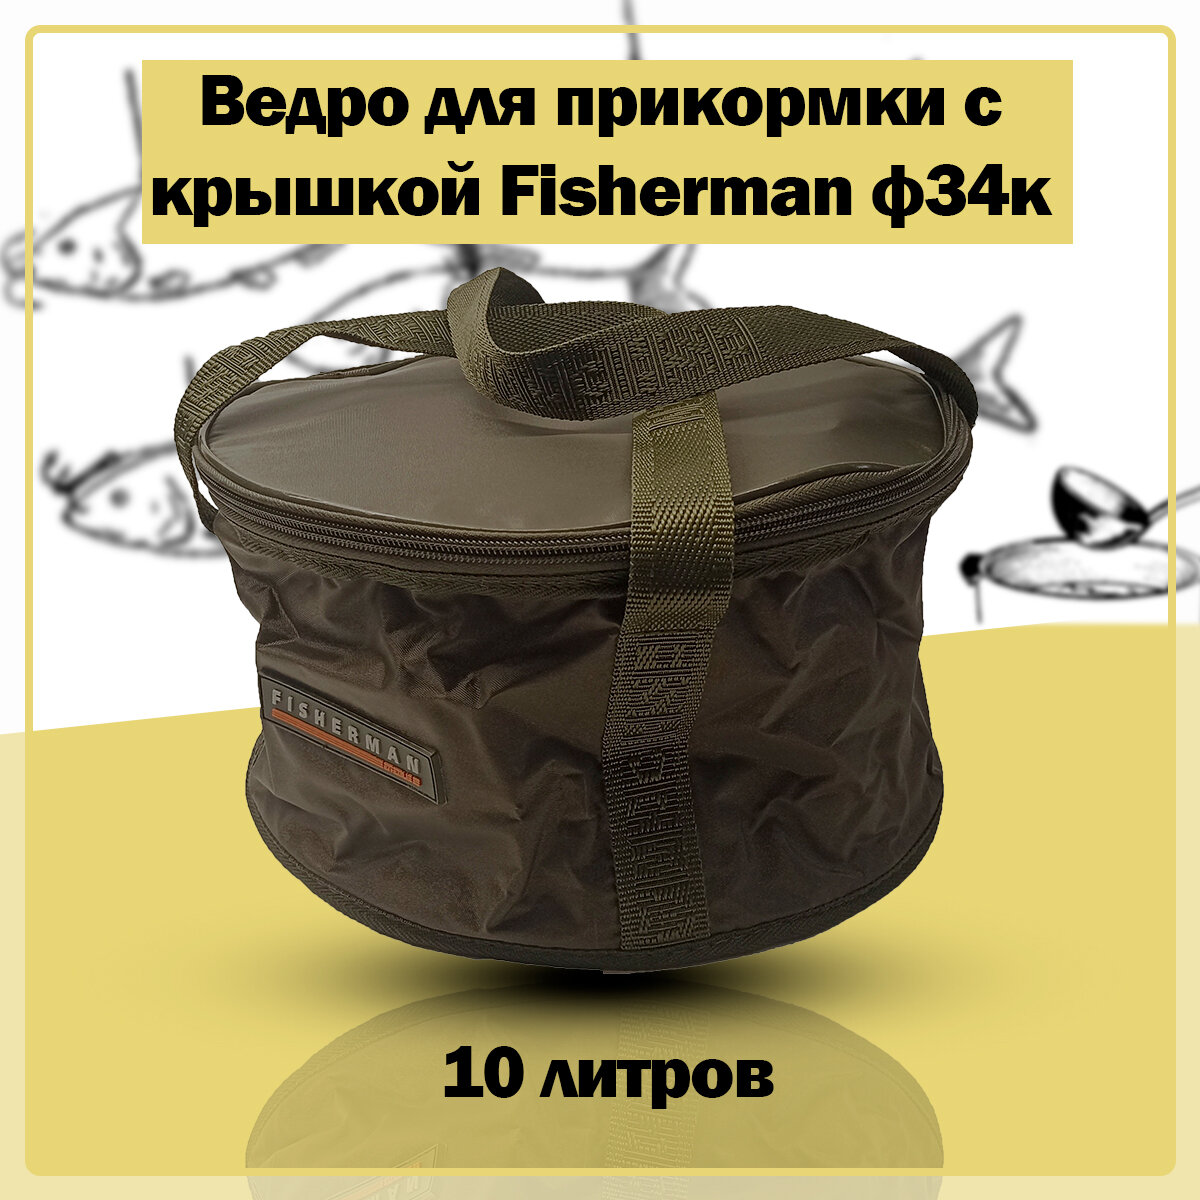 Ведро для прикормки Fisherman ф34к